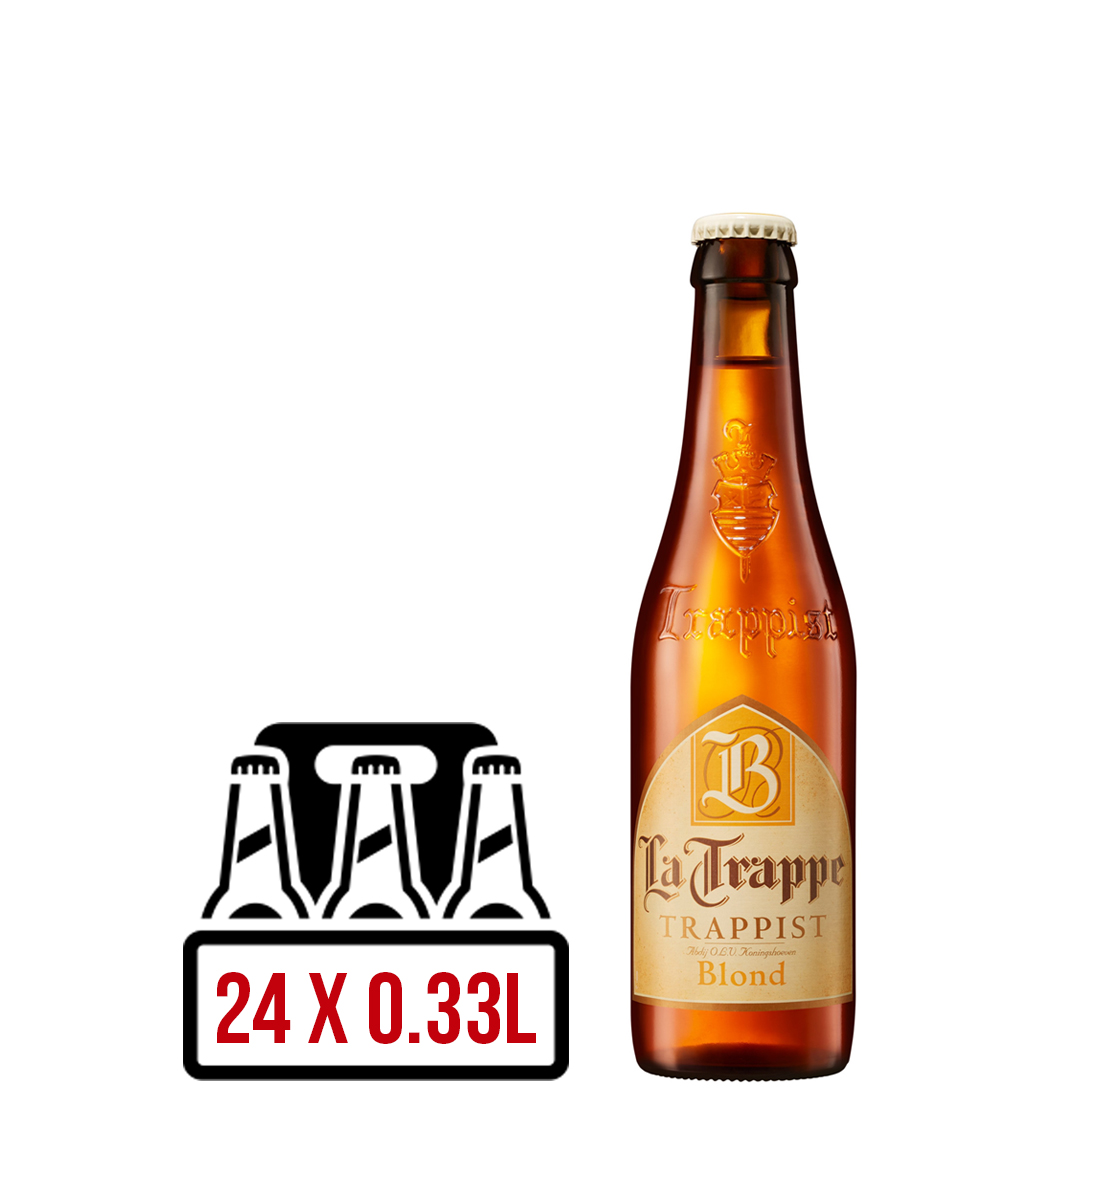 La Trappe Blond BAX 24 st. x 0.33L 0.33L